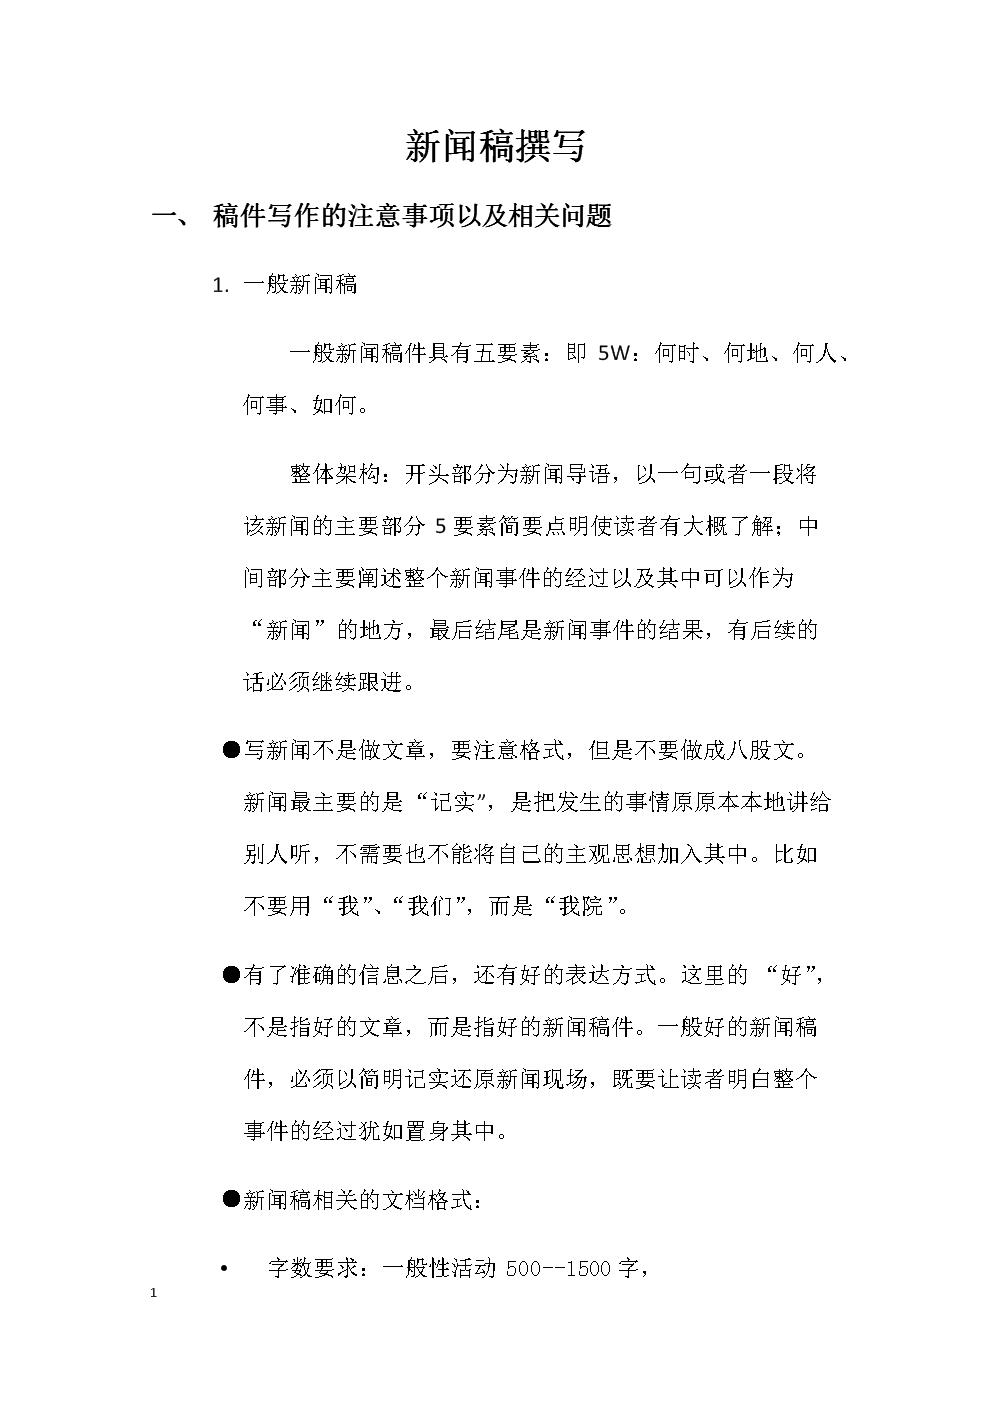 衢州年终考核新闻稿件发布